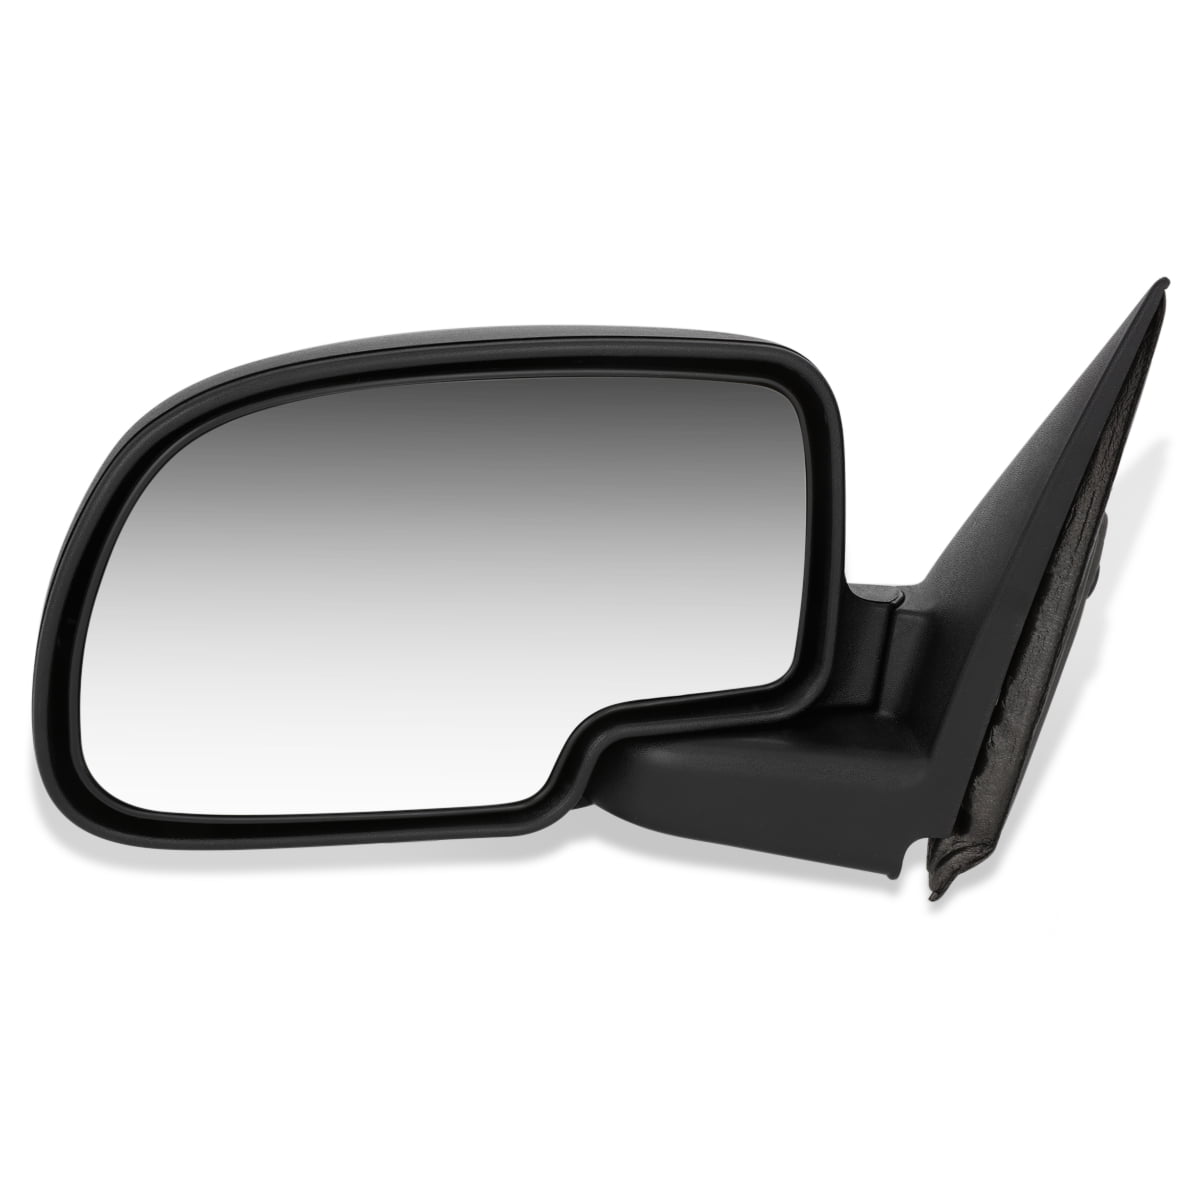 Dorman 955-1179 Driver Side Door Mirror for Select Chevrolet / GMC